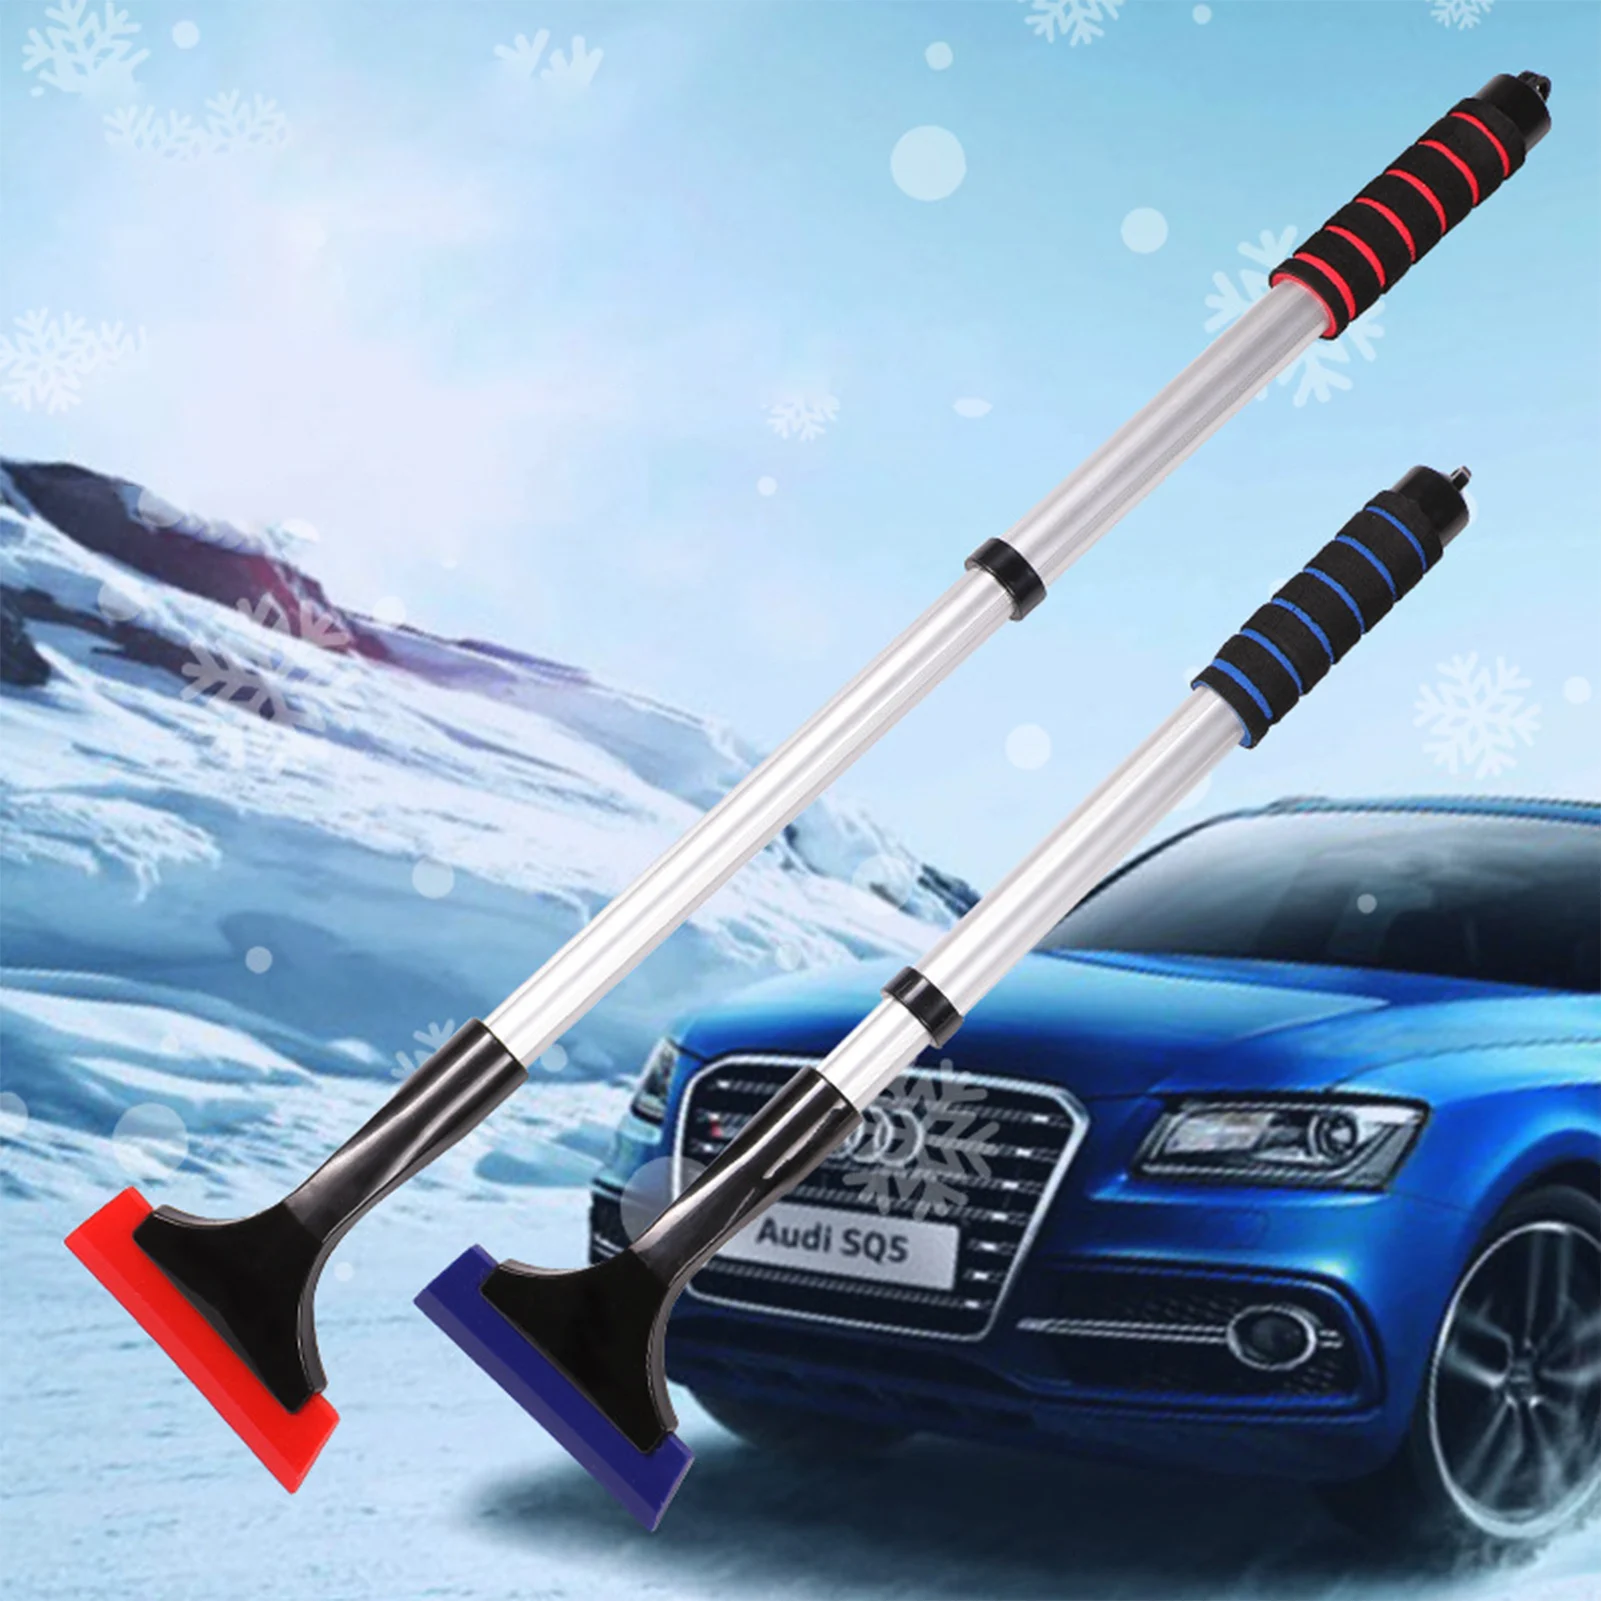 

Скребок для очистки снега с длинной ручкой, телескопическая лопатка для сноуборда, инструмент для удаления лобового стекла, машина для измельчения льда